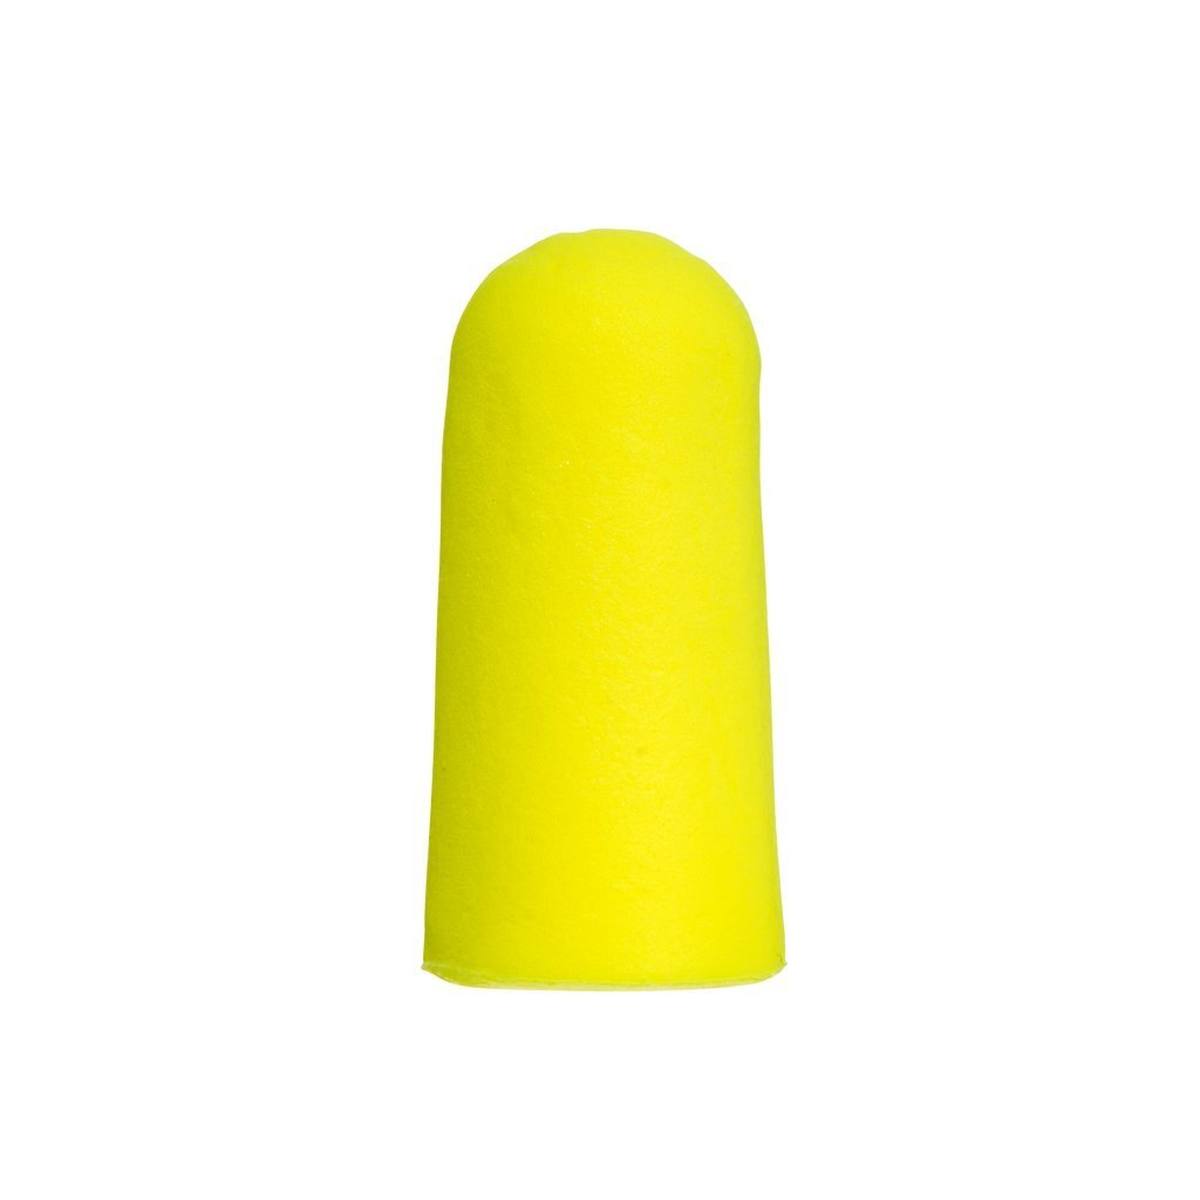 3M E-A-R Soft Yellow Neons, in poliuretano, flessibile e confortevole, in coppia in busta, giallo neon, SNR=36 dB, ES01001